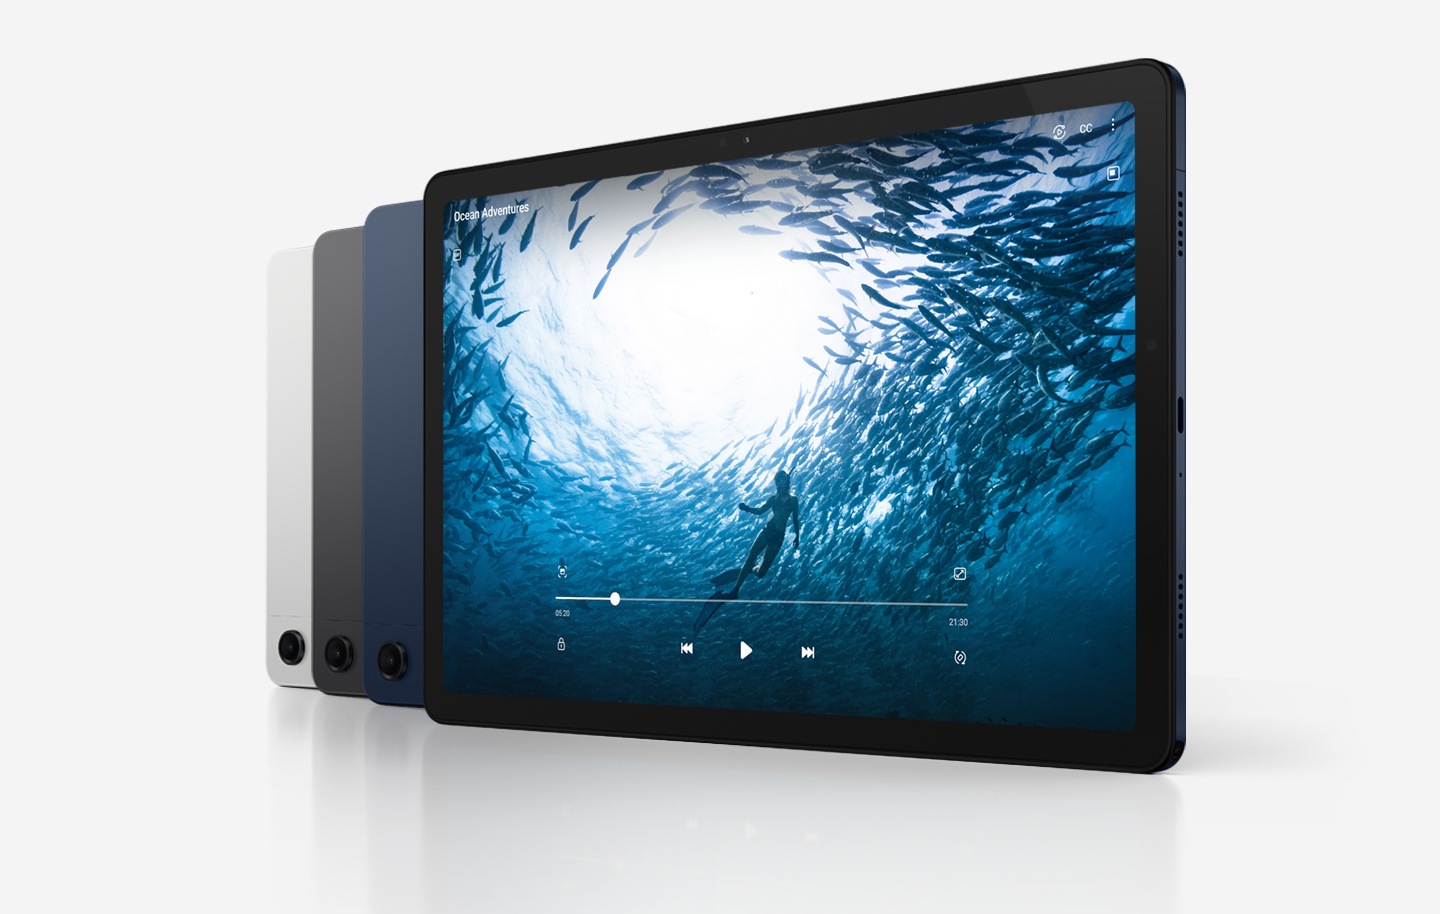 Cuatro dispositivos Galaxy Tab A9+ están en línea diagonal. Tres dispositivos tienen la parte posterior hacia el frente y el de la derecha muestra la pantalla. De izquierda a derecha, el color de los dispositivos es Plata y Grafito, y el resto es Azul Marino. El dispositivo de la derecha tiene en pantalla un vídeo titulado Ocean Adventures, con una persona nadando en el océano rodeada de peces.